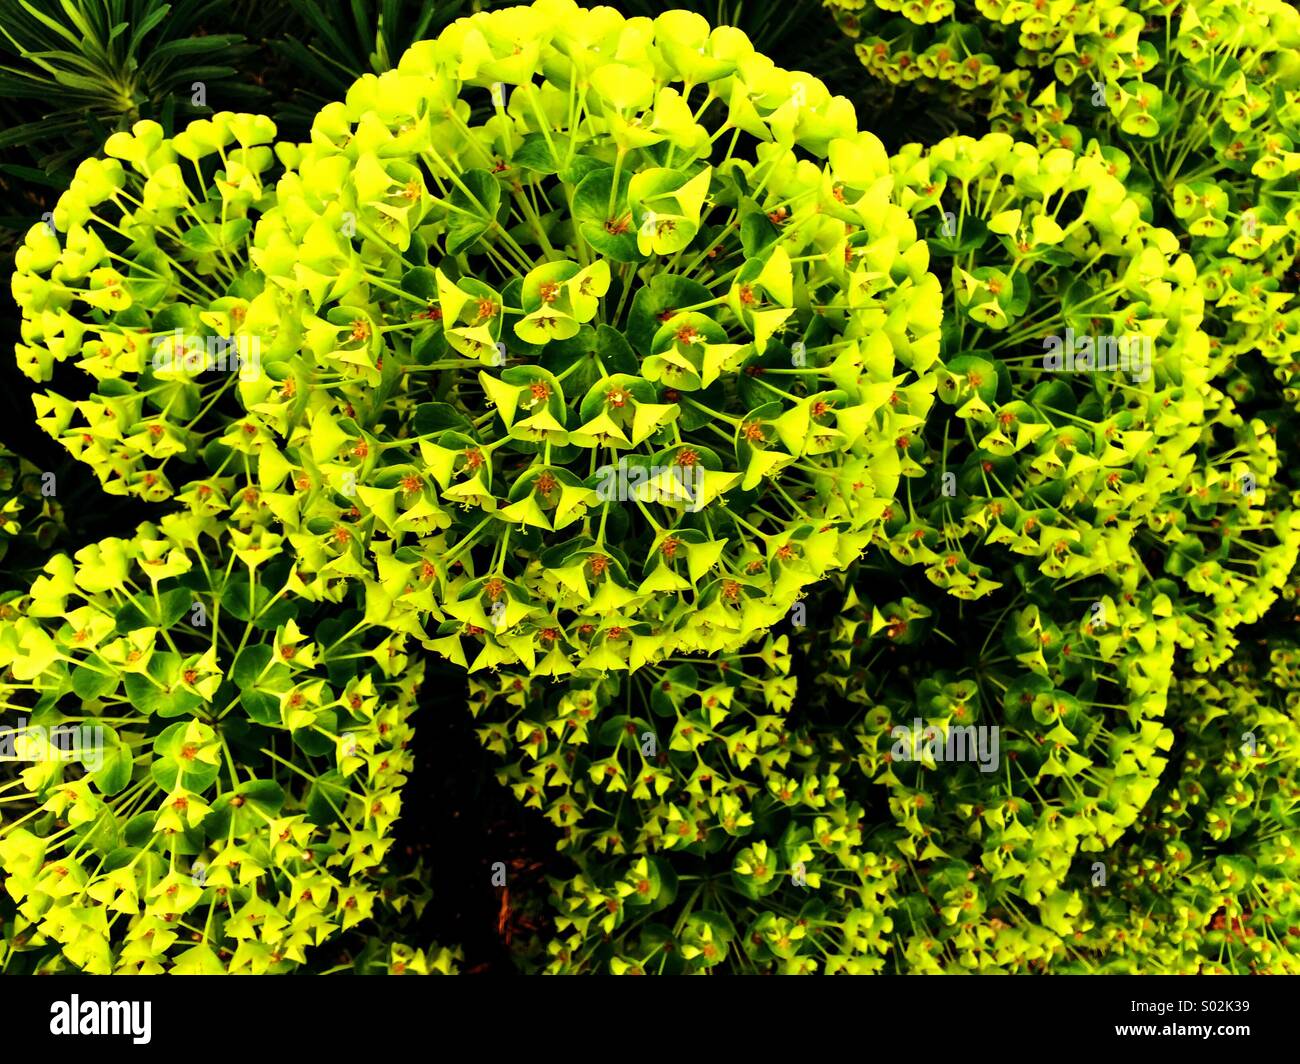 Yellow plant spheres Stock Photo